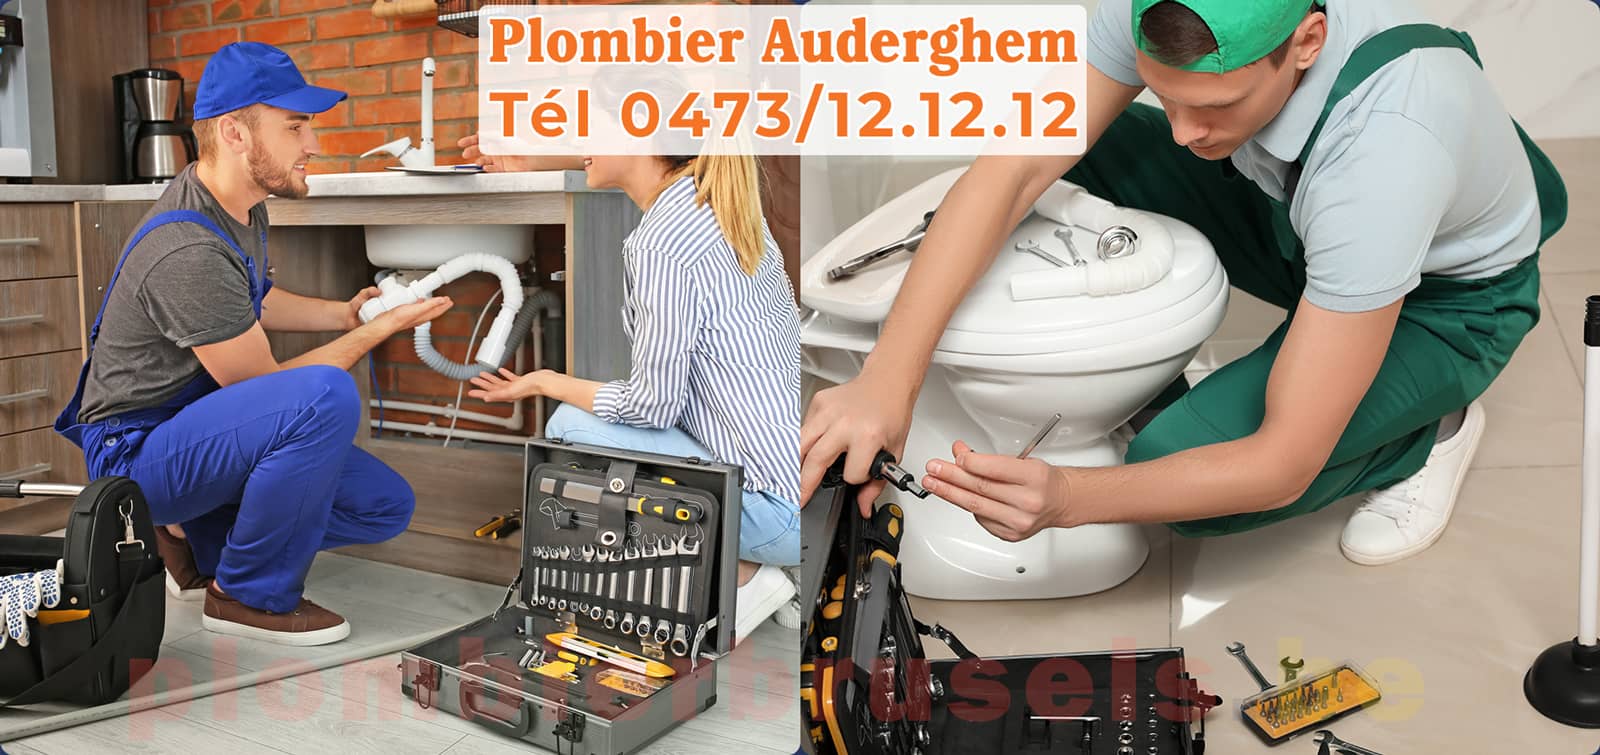 Plombier Auderghem service de Plomberie tél 0473/12.12.12